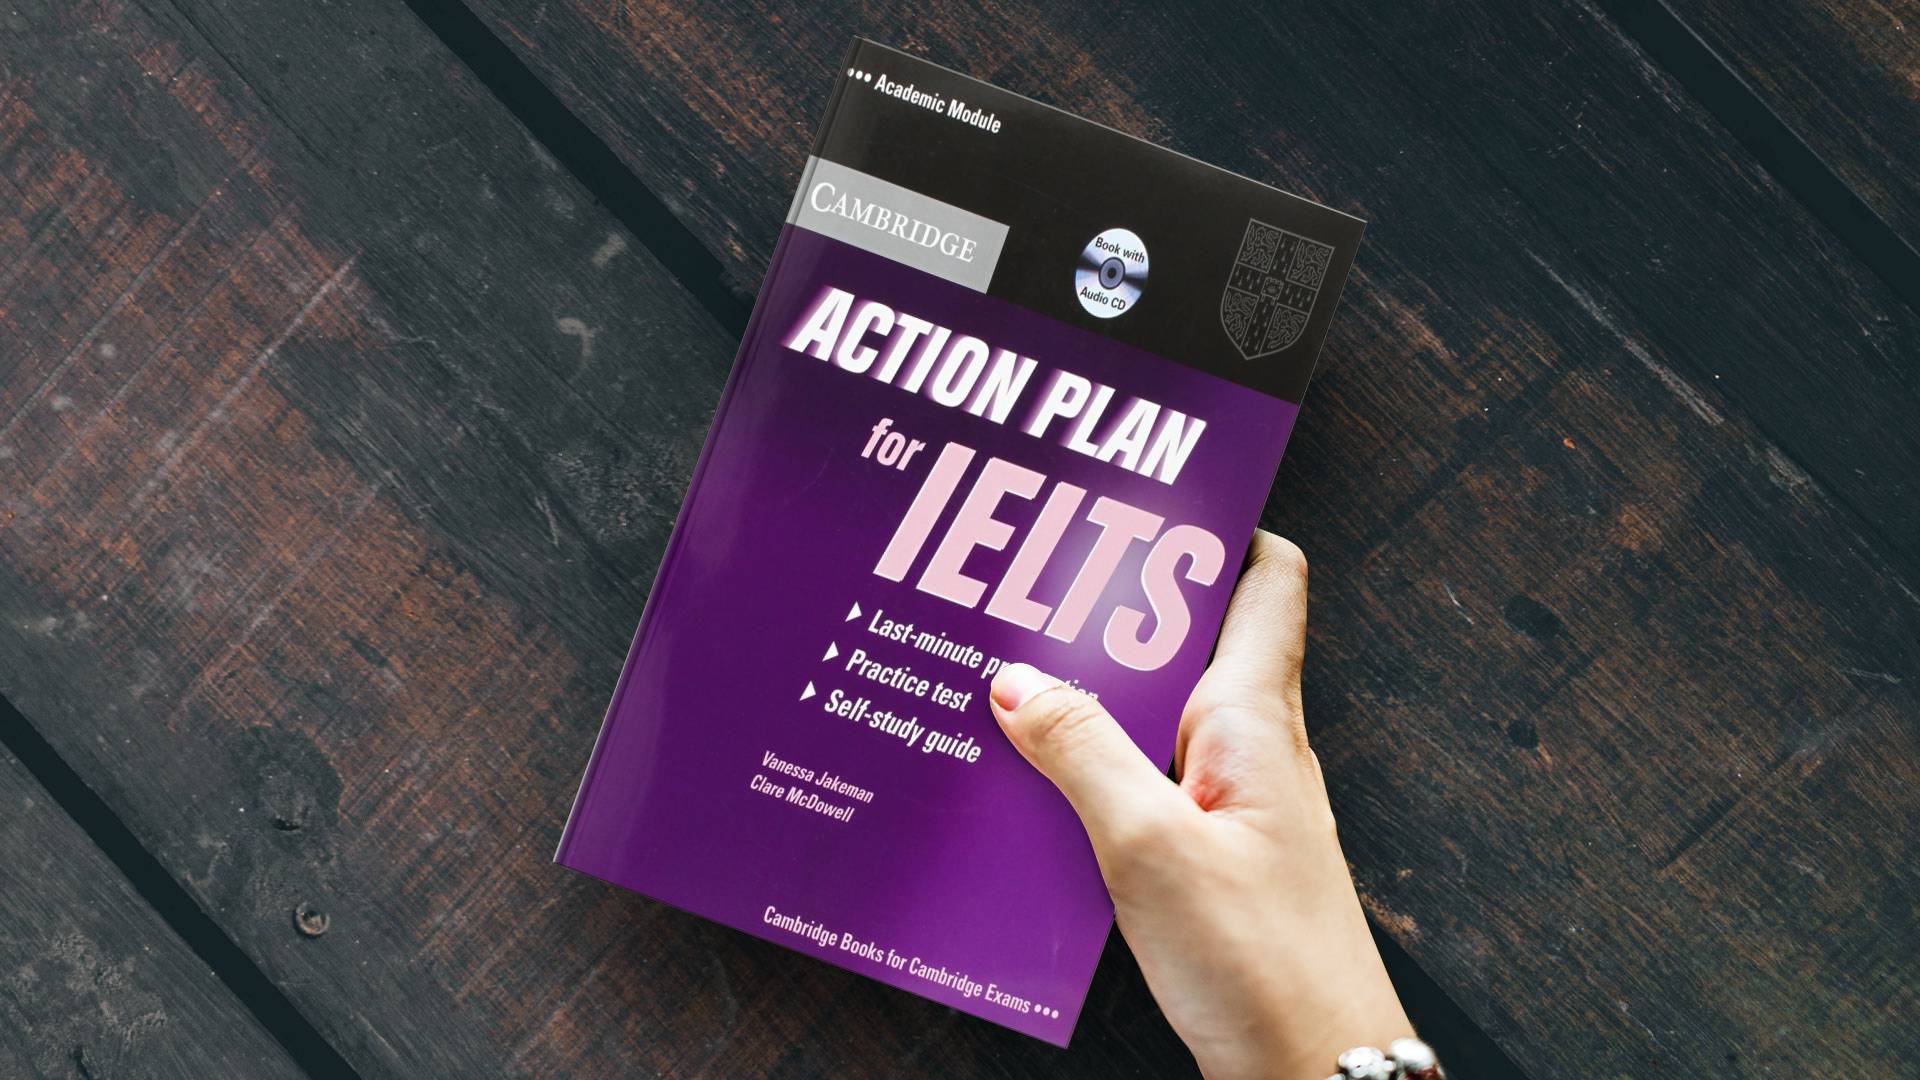 خرید کتاب زبان | فروشگاه اینترنتی کتاب زبان | Cambridge Action Plan for IELTS Academic Module | کمبریج اکشن پلن فور آیلتس آکادمیک مدل